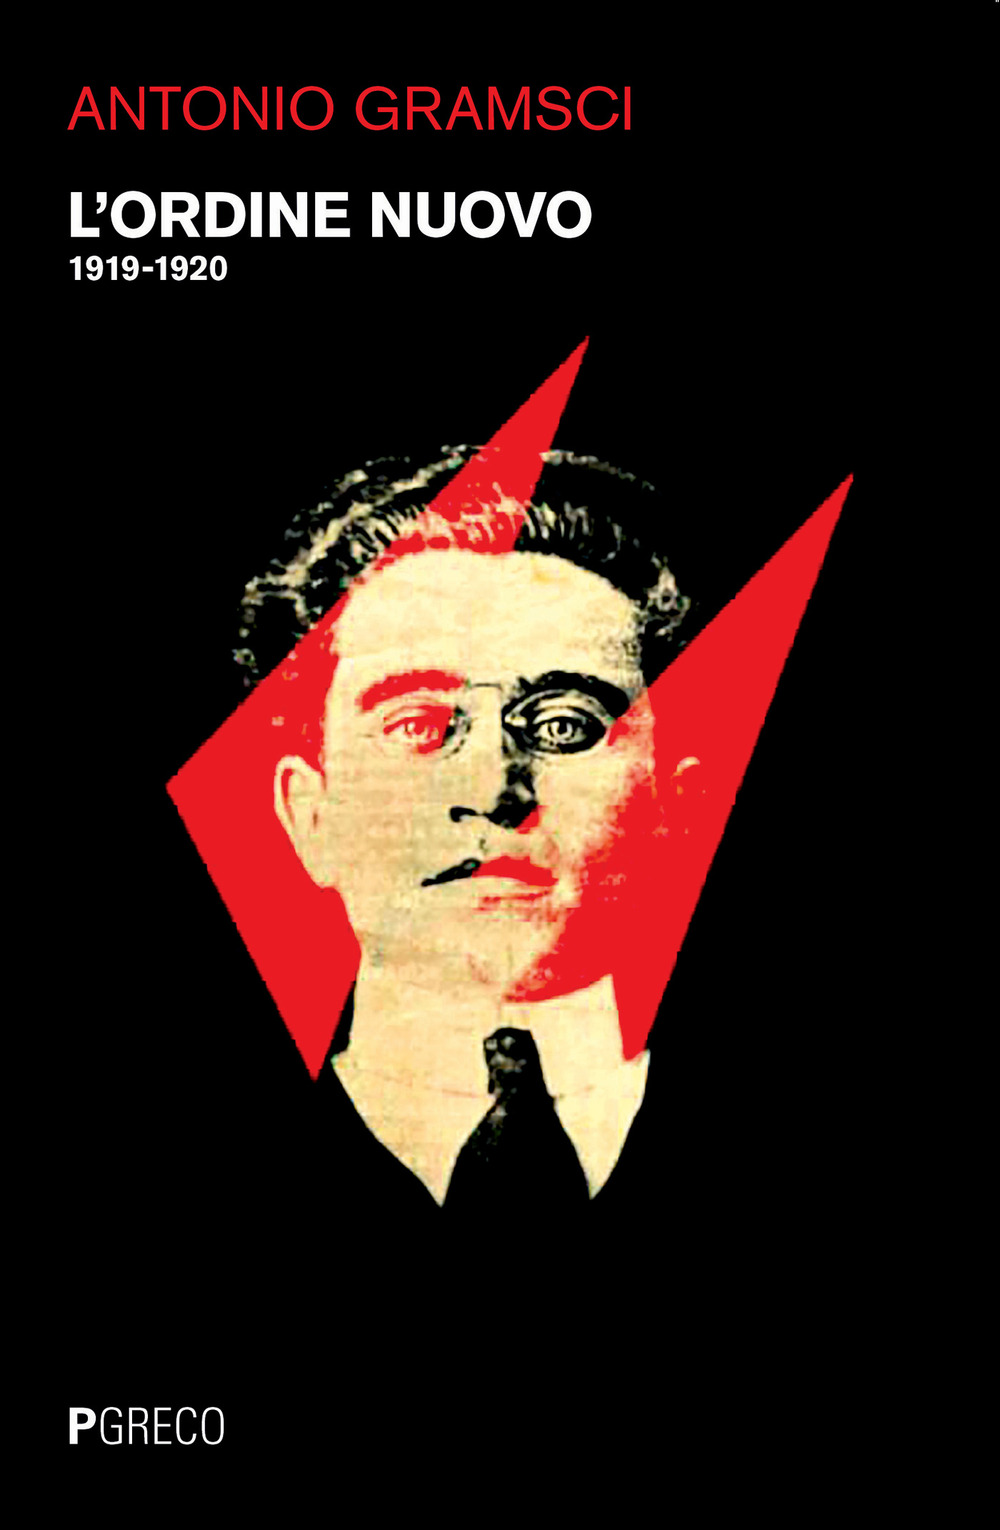 Libri Antonio Gramsci - L' Ordine Nuovo (1919-1920) NUOVO SIGILLATO, EDIZIONE DEL 25/11/2020 SUBITO DISPONIBILE